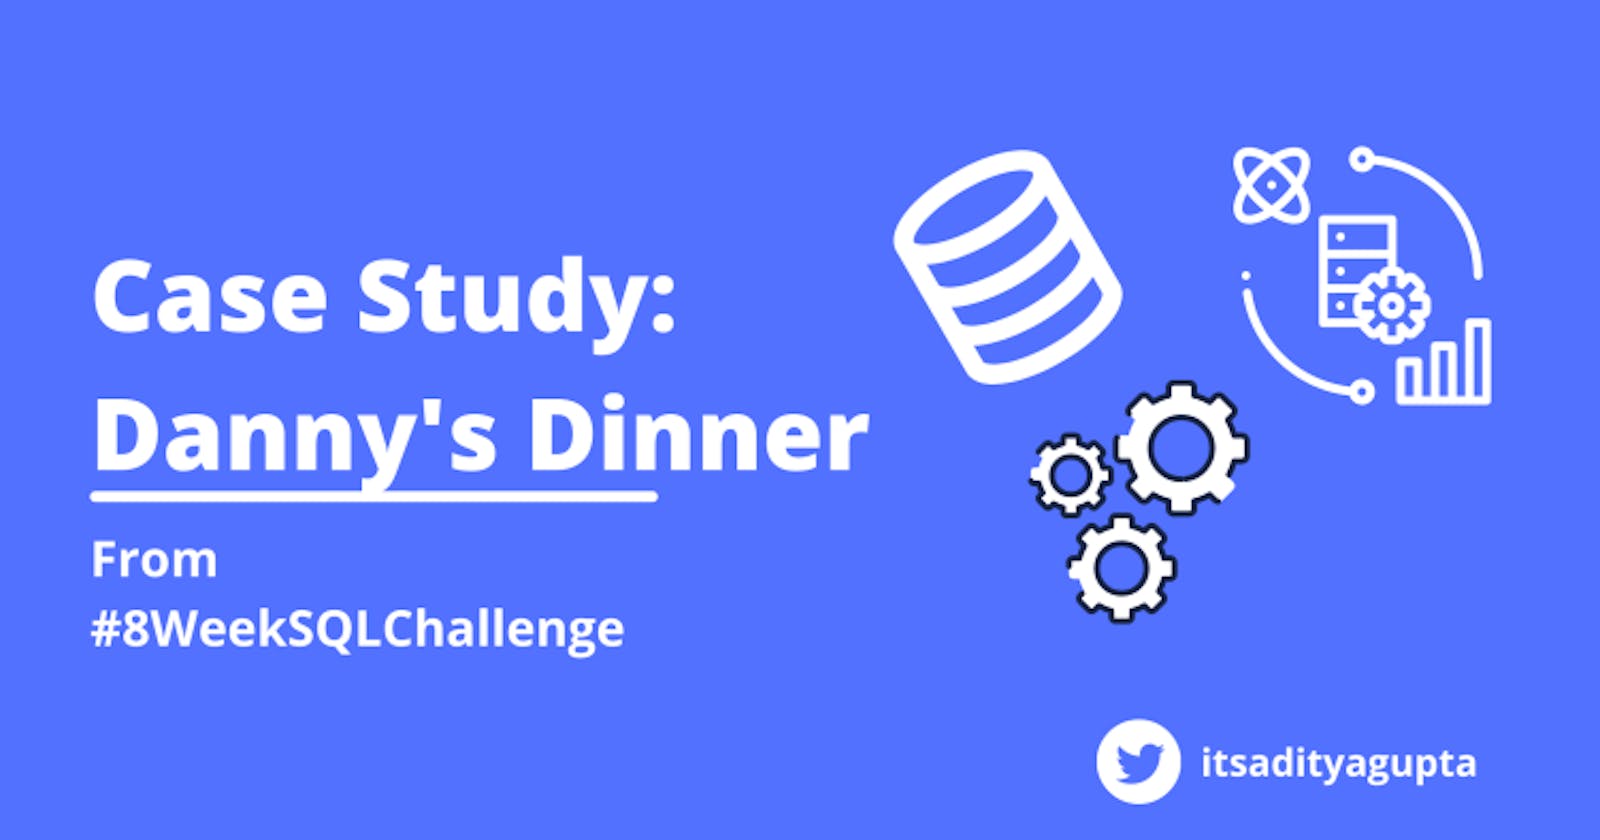 Case Study: Danny's Dinner